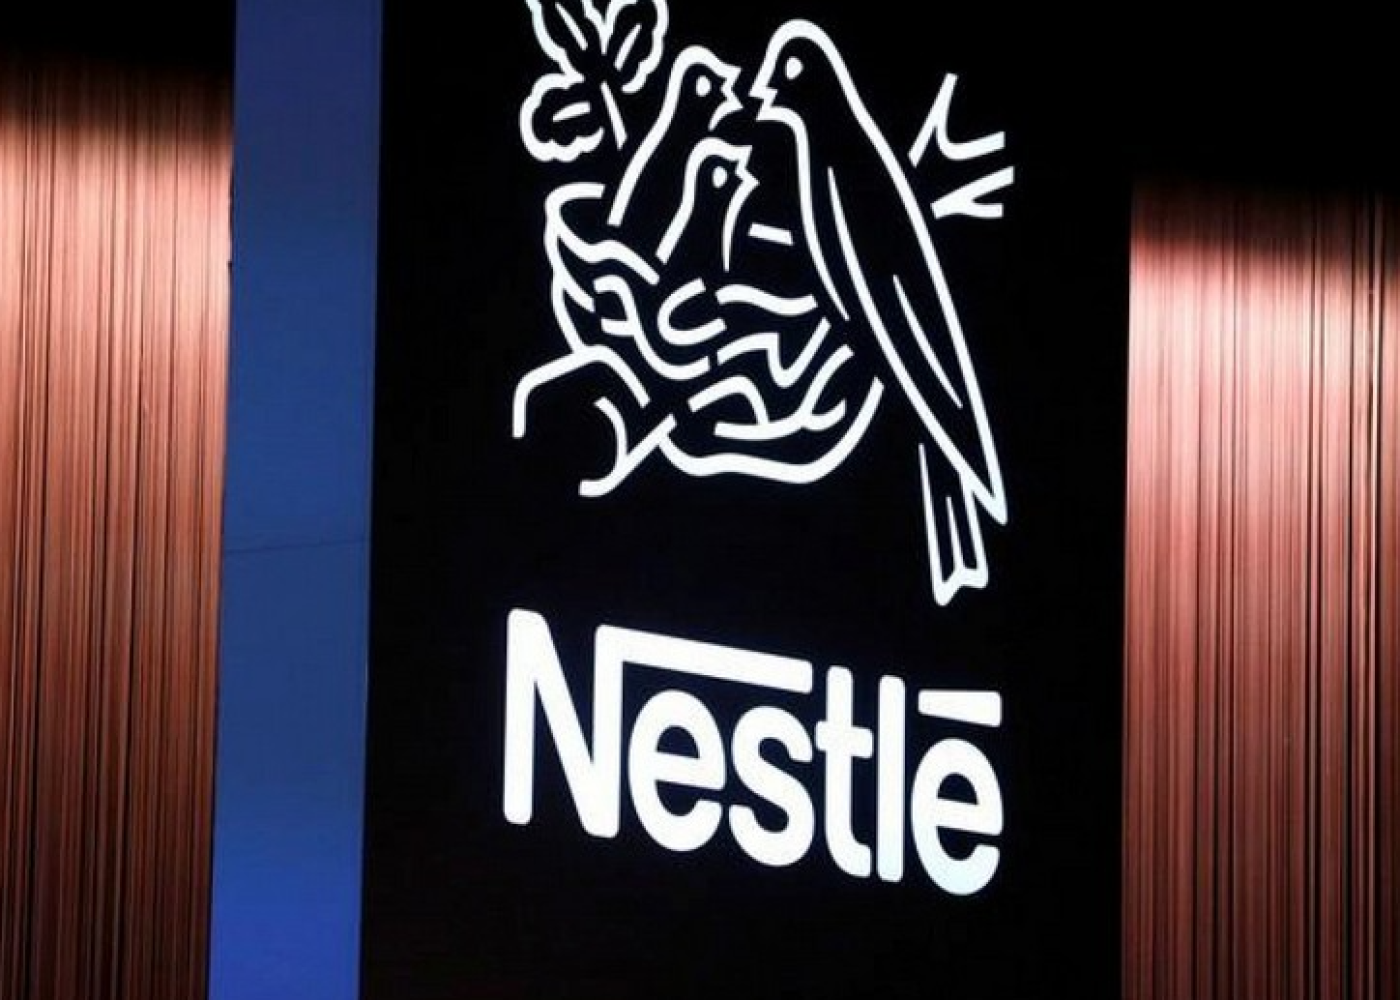 "Nestle Azərbaycan" işiməhkəməlik oldu